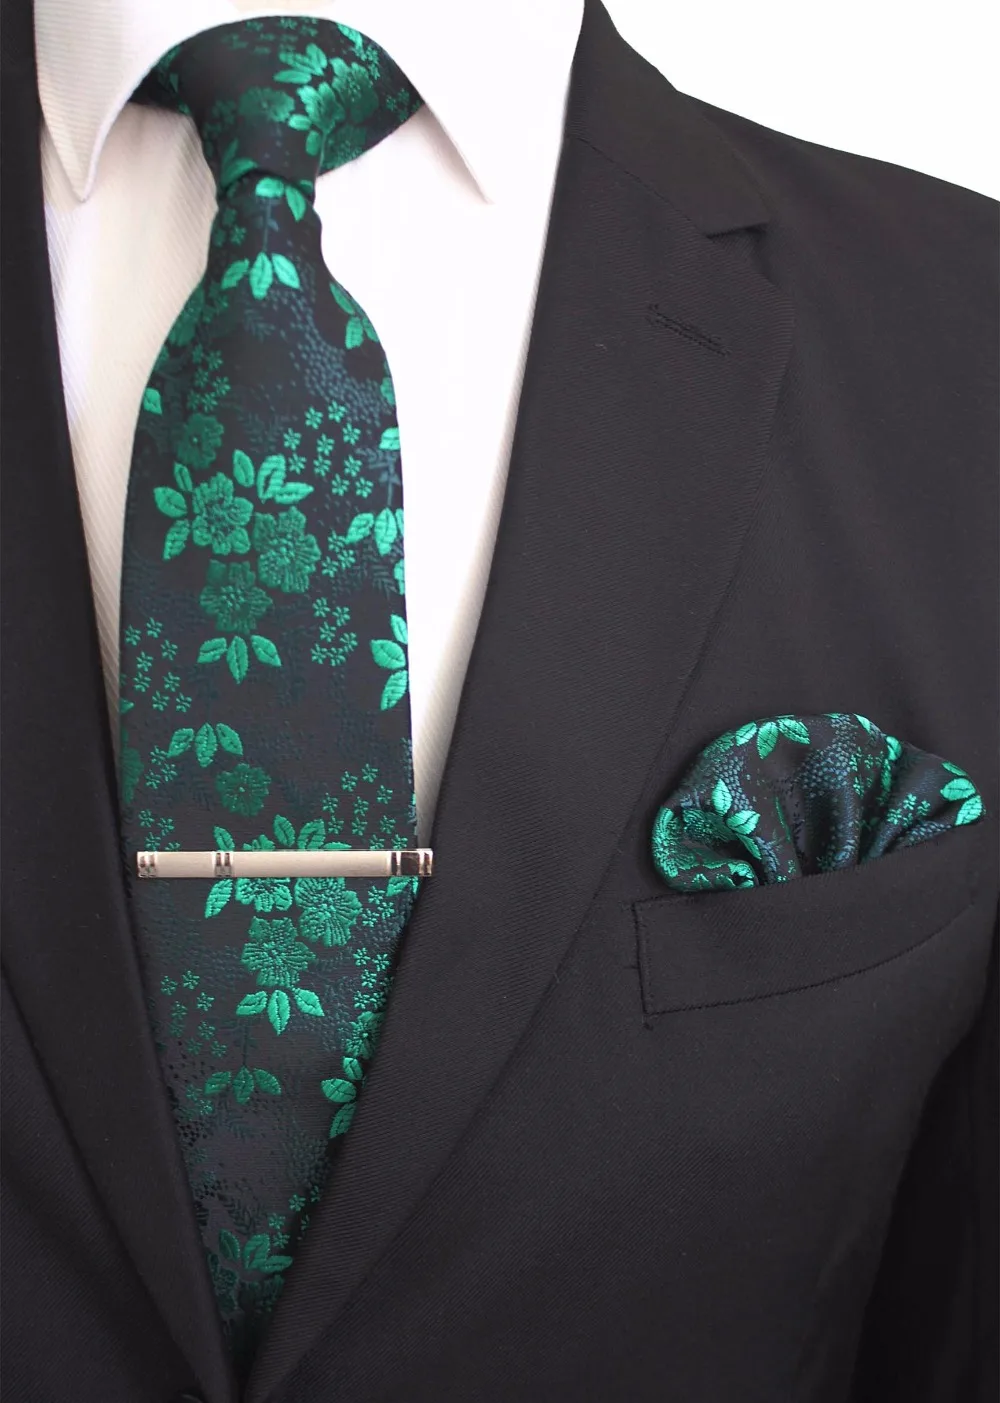 JEMYGINS Оригинал 100% шелк Цветочный шейный платок клип Hanky комплект ручной работы галстук высокого качества карман квадратная игла для